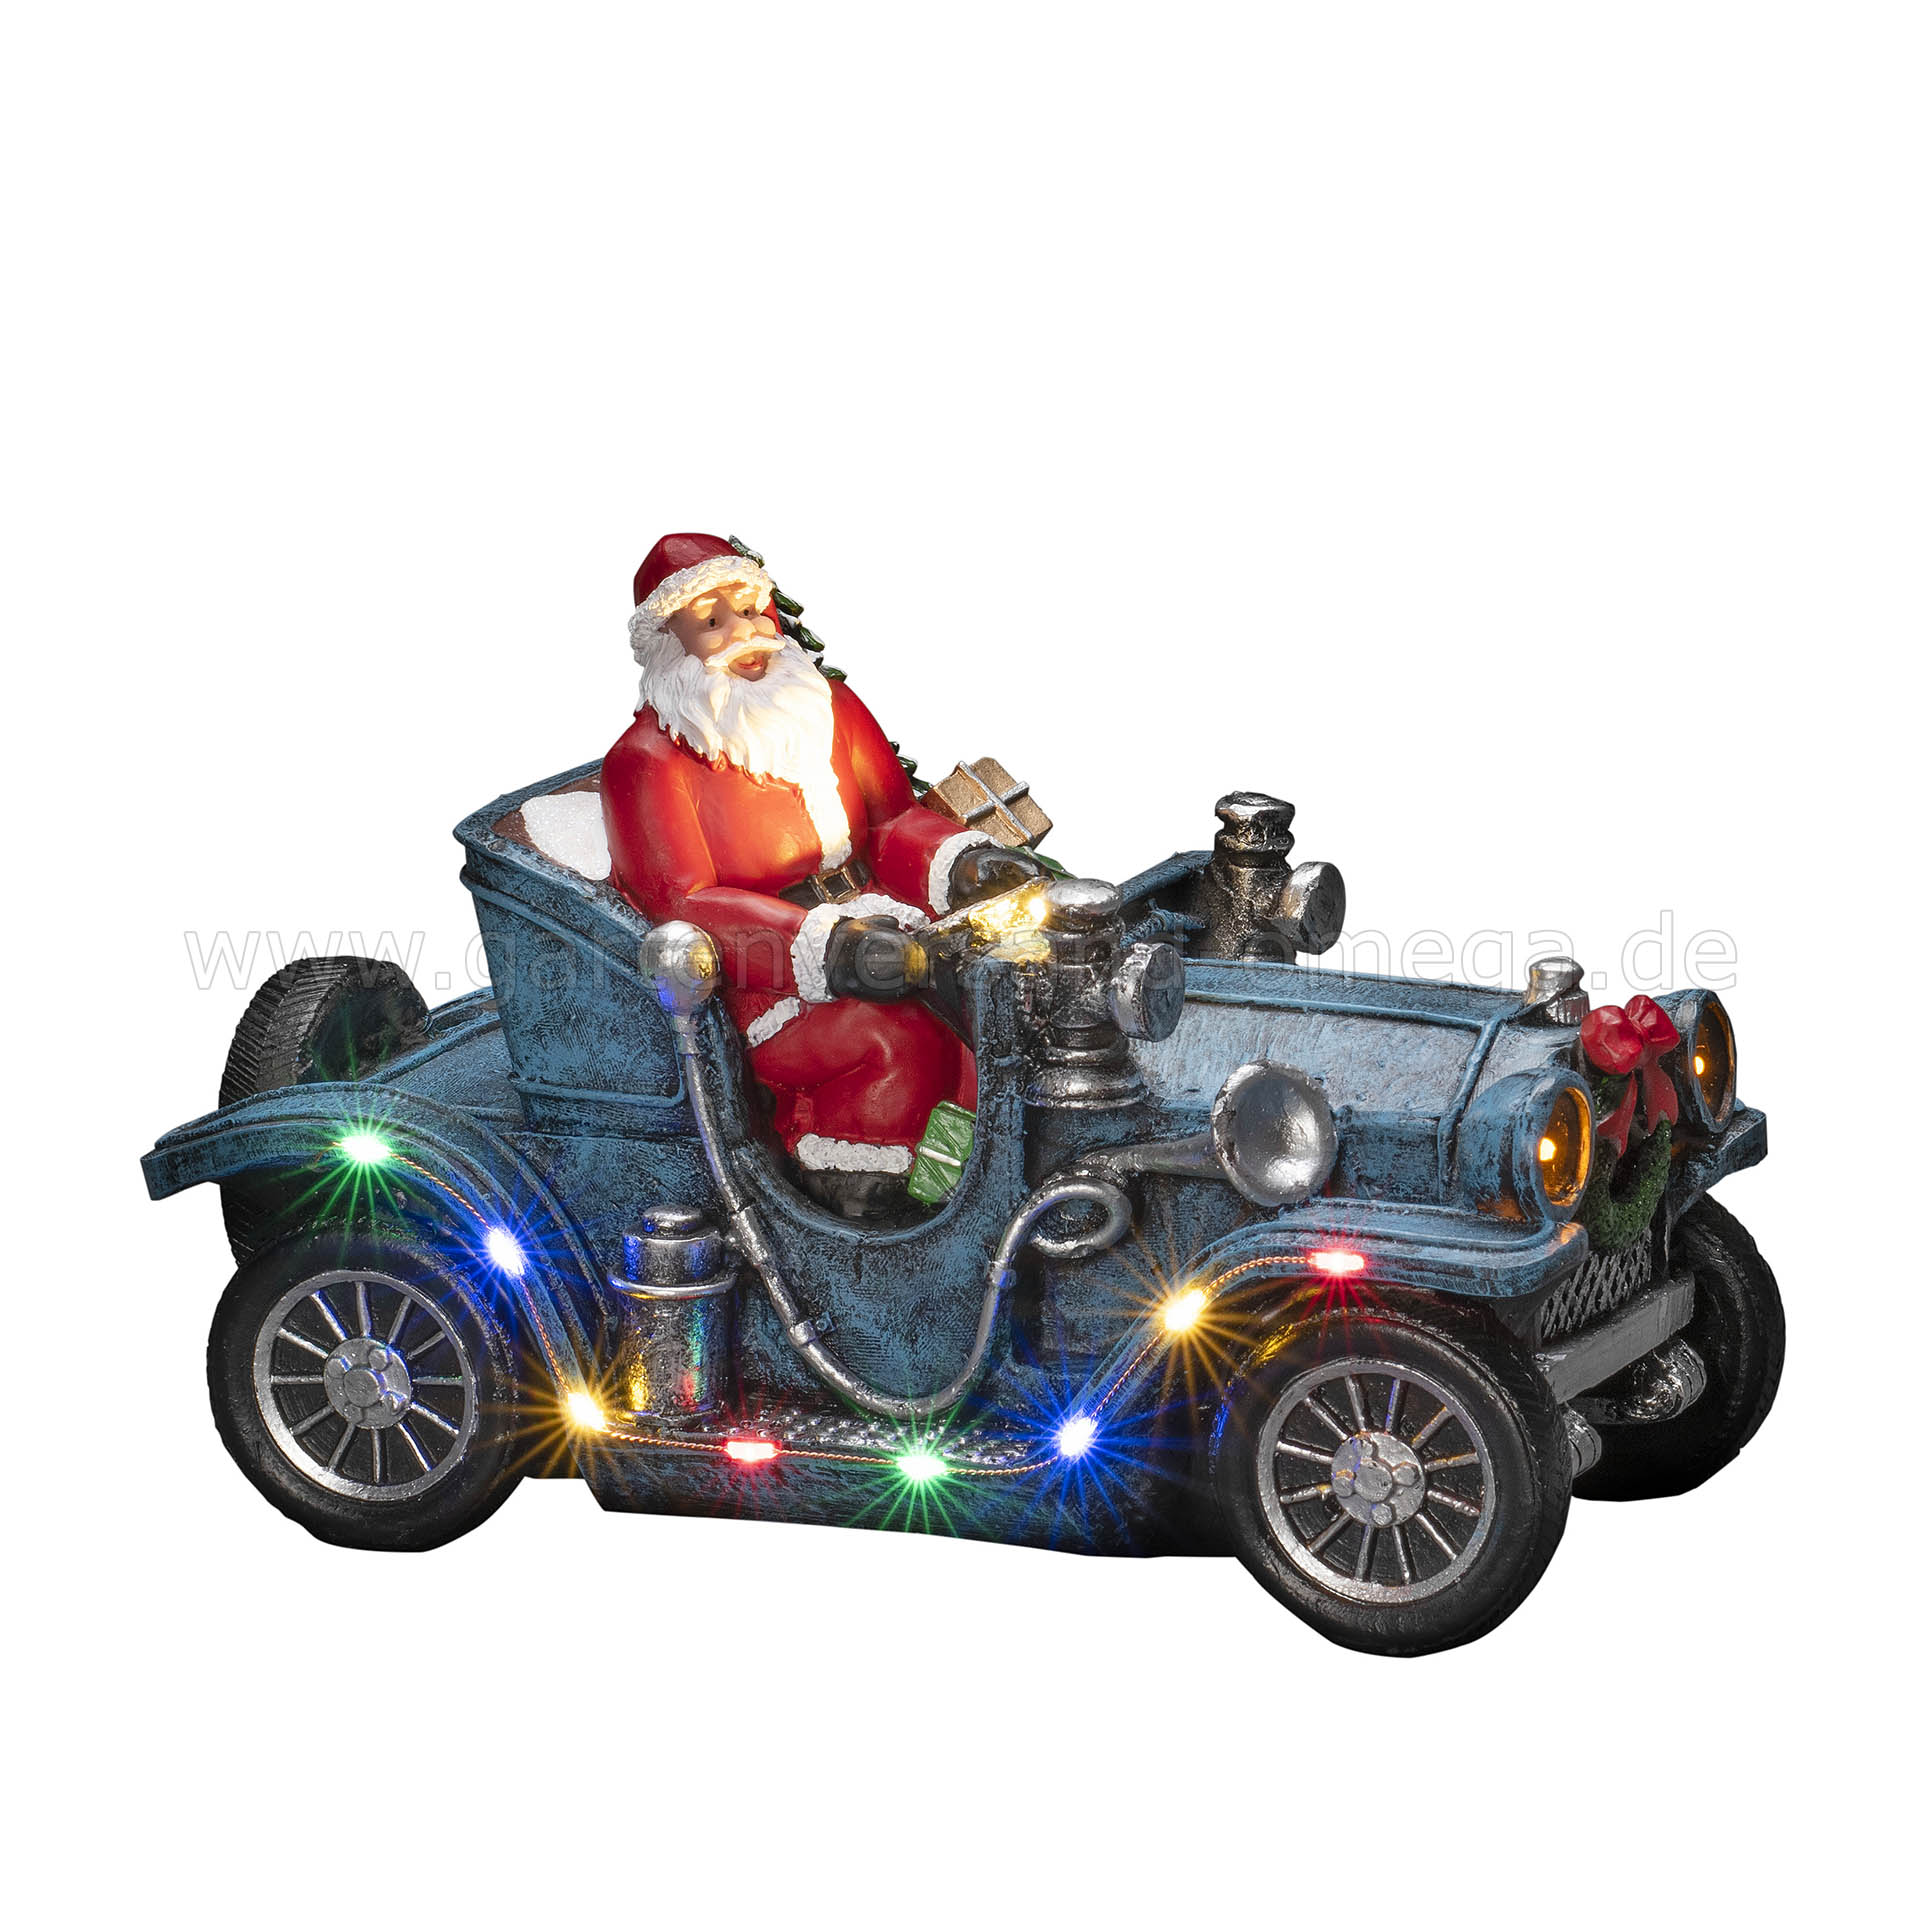 LED-Szenerie Weihnachtsmann im Auto - Schreibtischdekoration Deko-Auto Weihnachten, LED Weihnachtsdeko Weihnachtsmann, Auto Weihnachtsmann, LED-Figur Oldtimer Weihnachtsmann, Auto, Auto LED-Beleuchtung mit mit